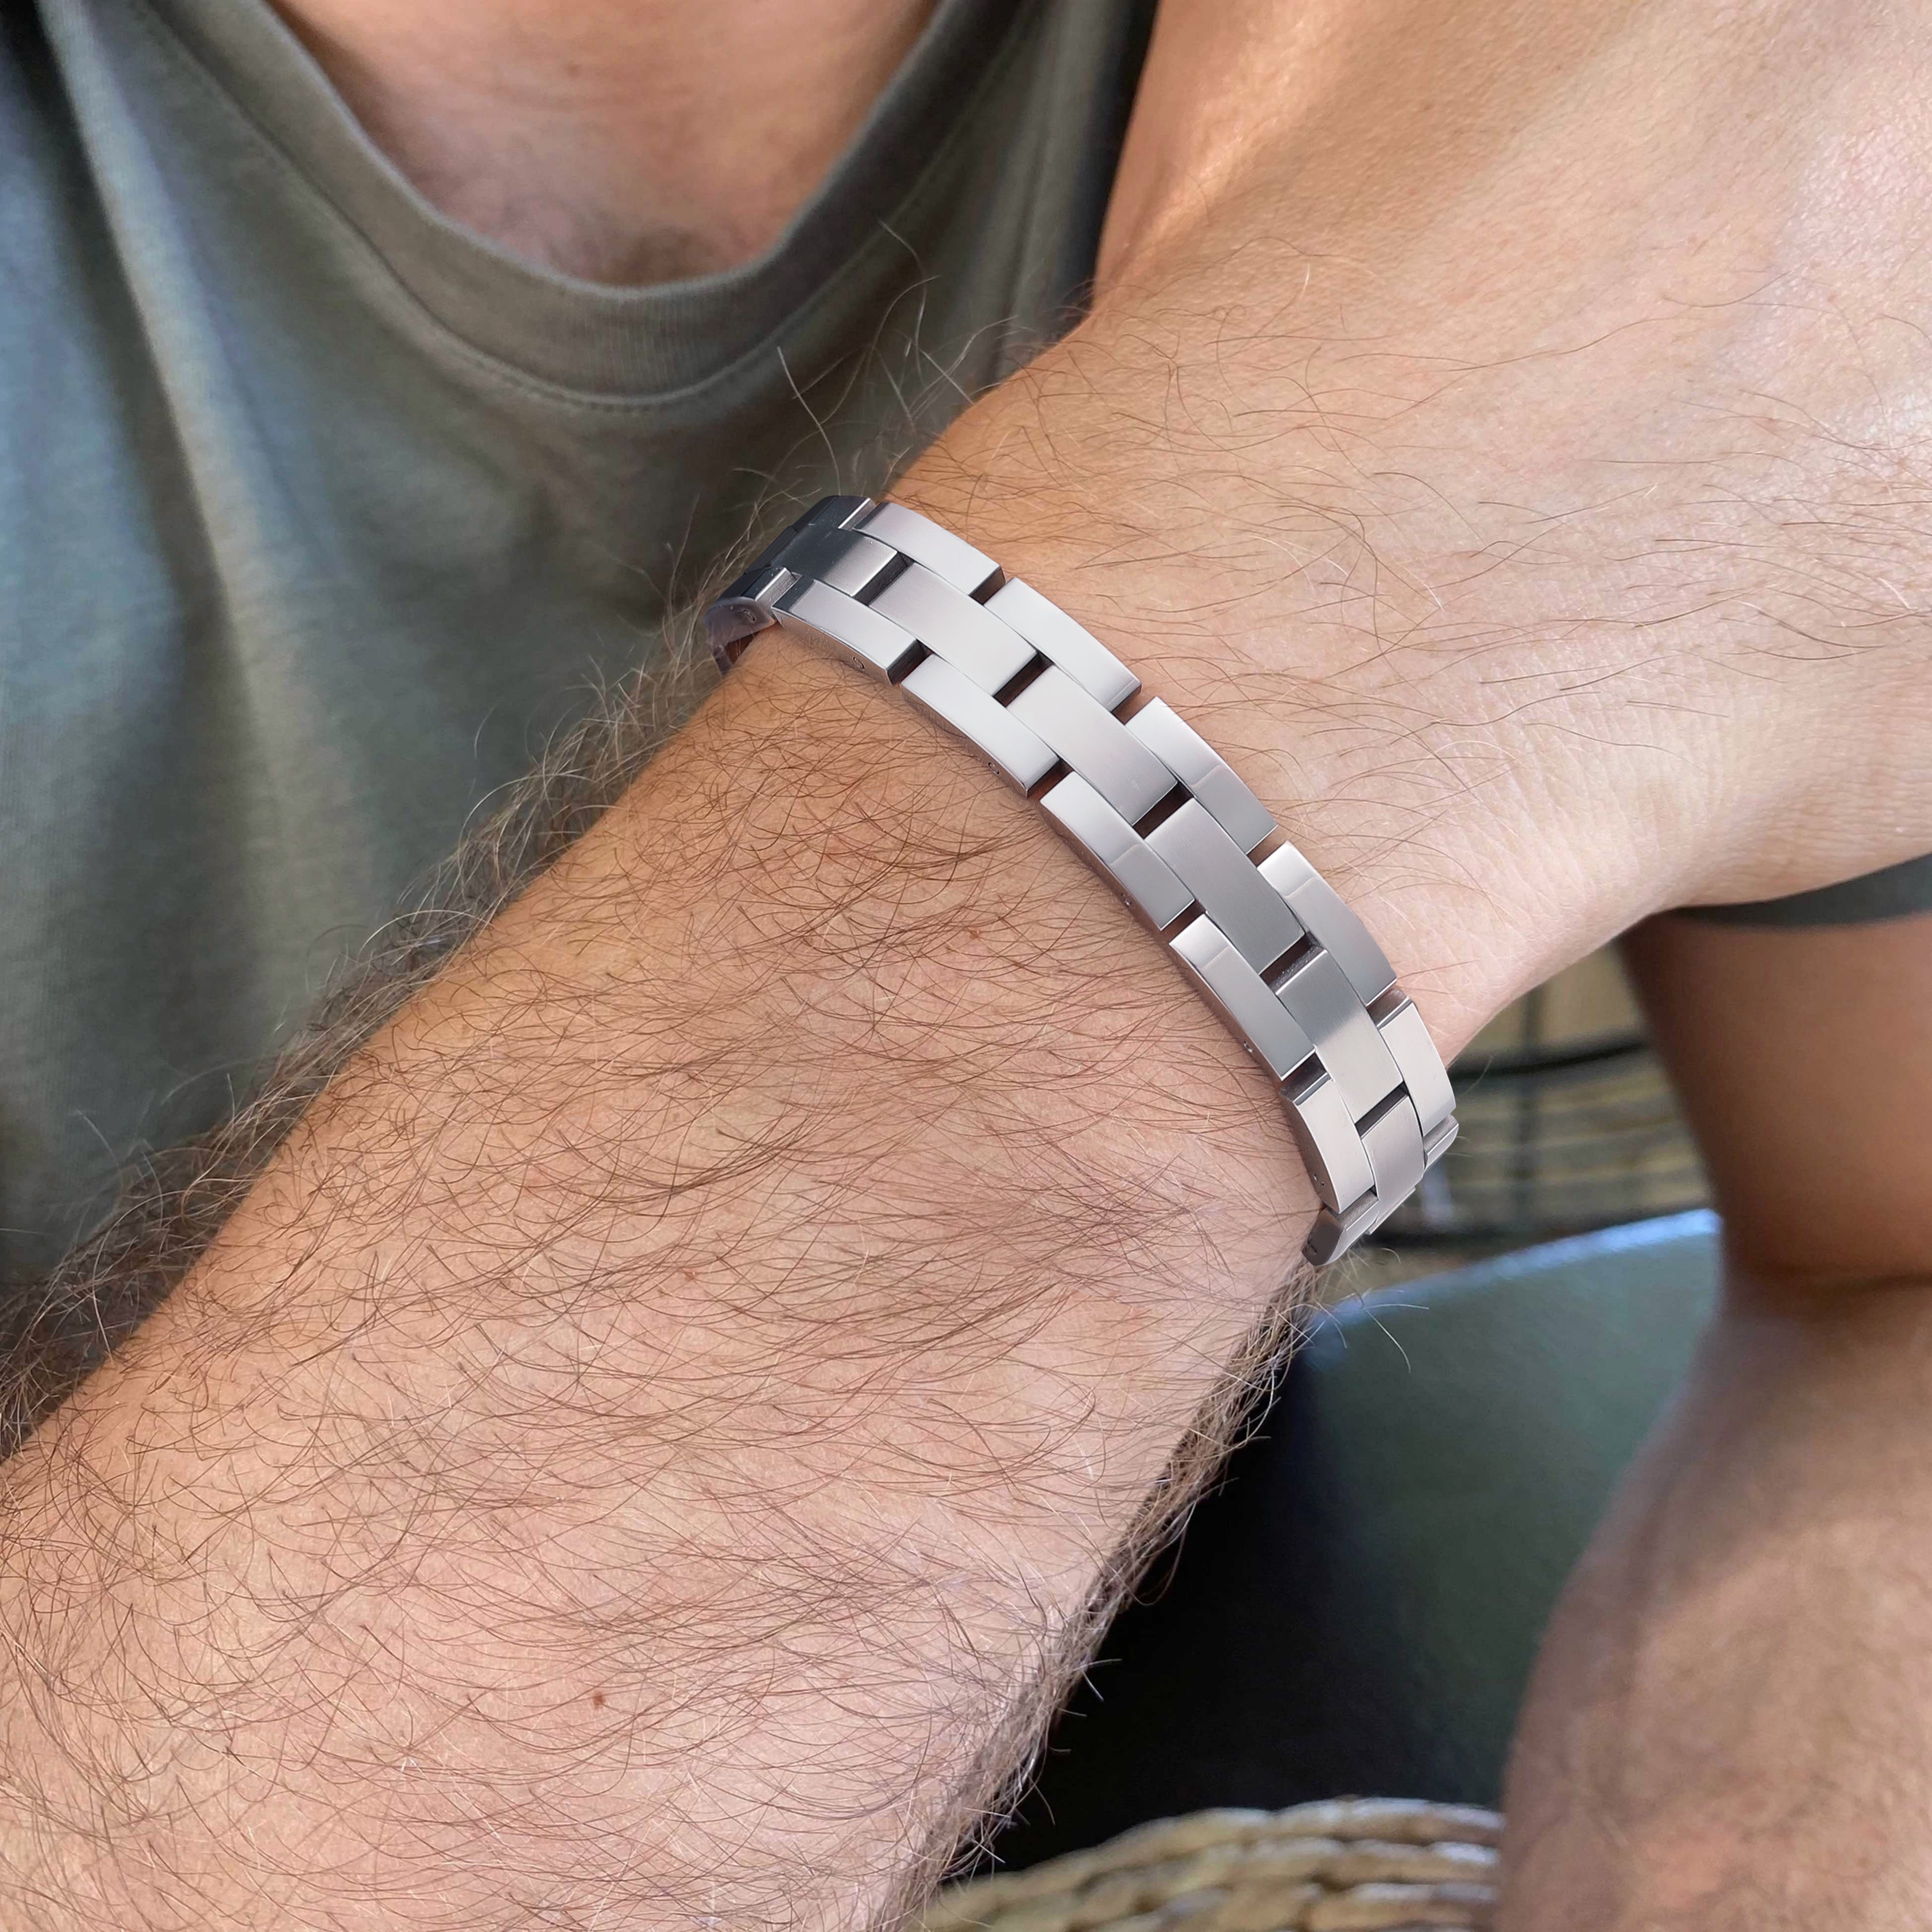 2Pcs Carbon Blue Titanium Magnetic Therapy Bracelets Unique Double Row  Strength | eBay